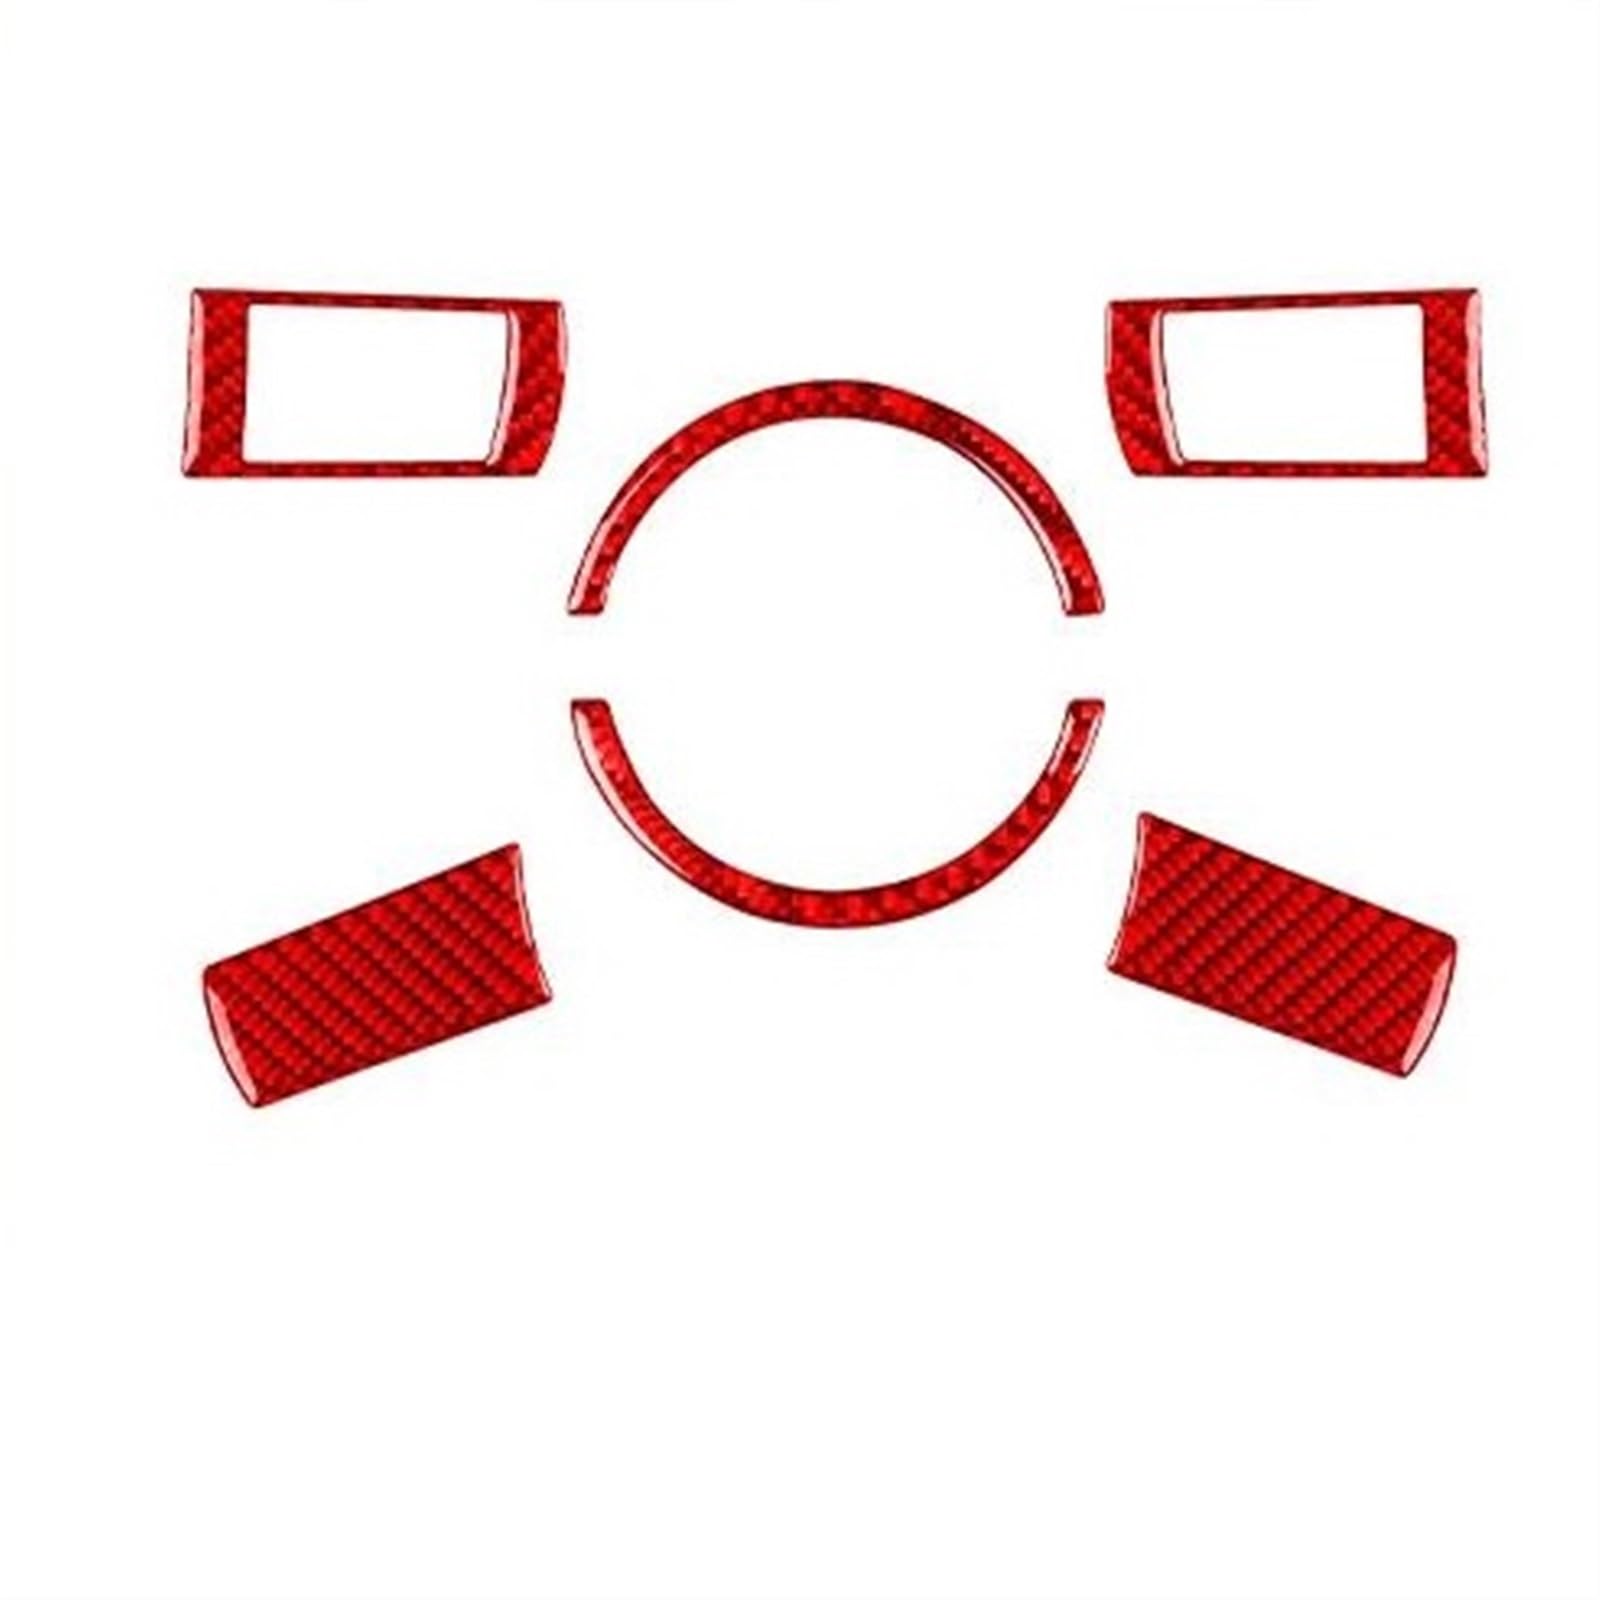 Für Chrysler Für 300 Für 300C 2005-2007 Carbon Faser Instrument Lenkrad Taste Panel Auto Innen Zubehör Dekorative Aufkleber Auto Aufkleber Abdeckung Cover Decal Trim(B Red) von ZHANGZHENGYAO